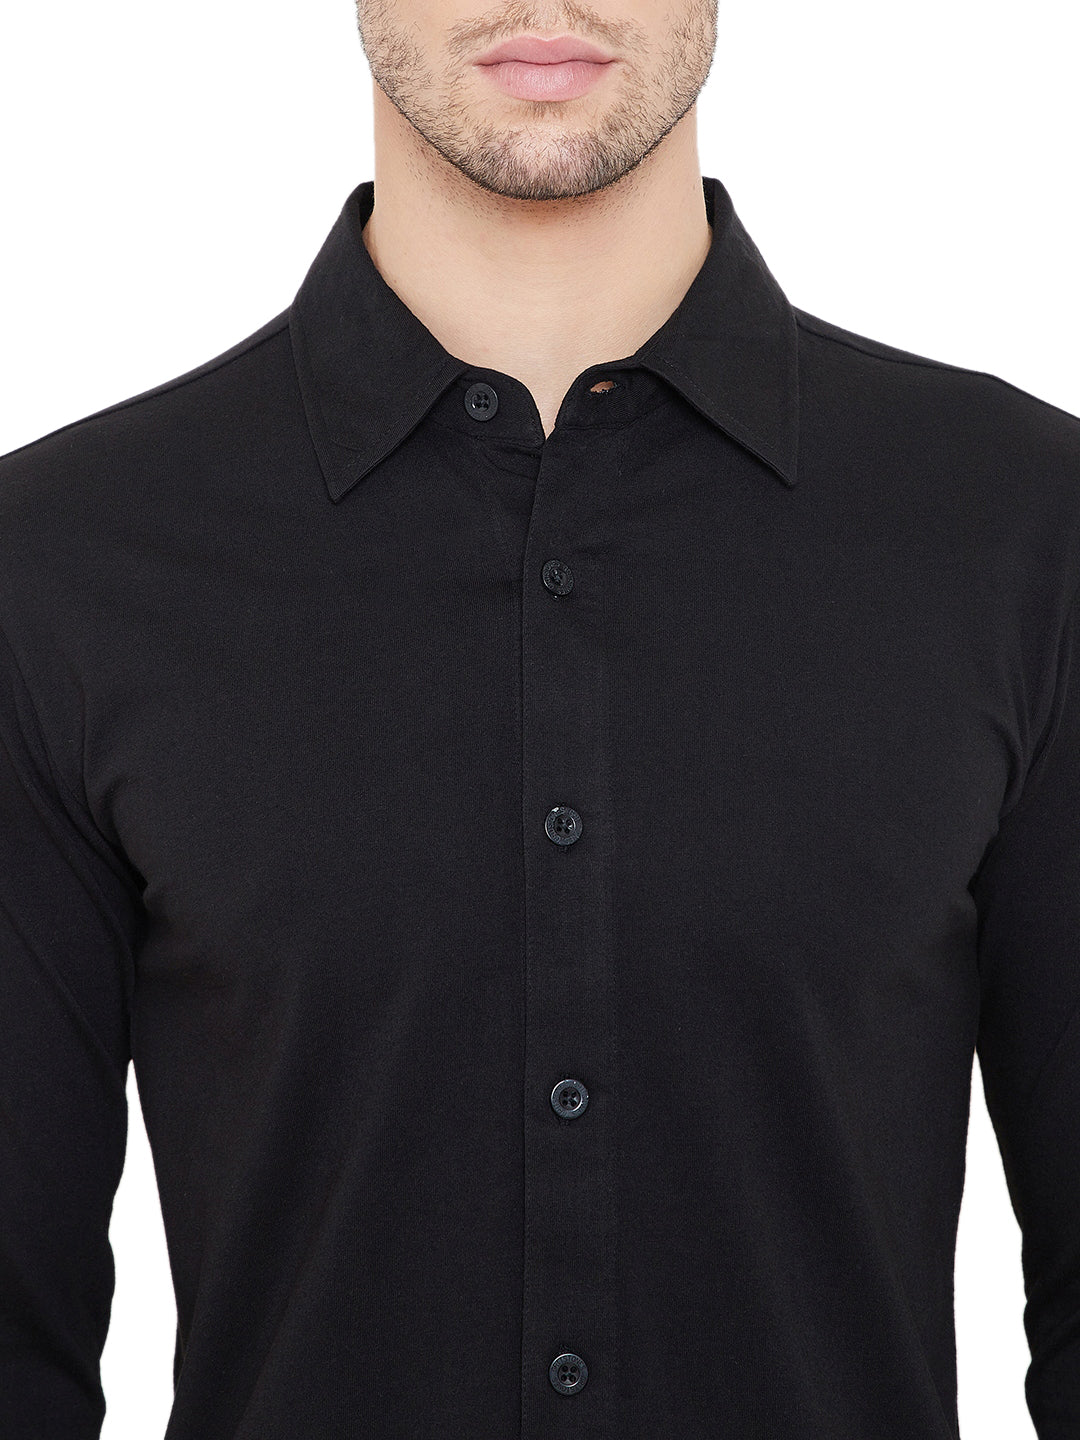 Black Men Full Sleeves Solid Regular Collar Shirt